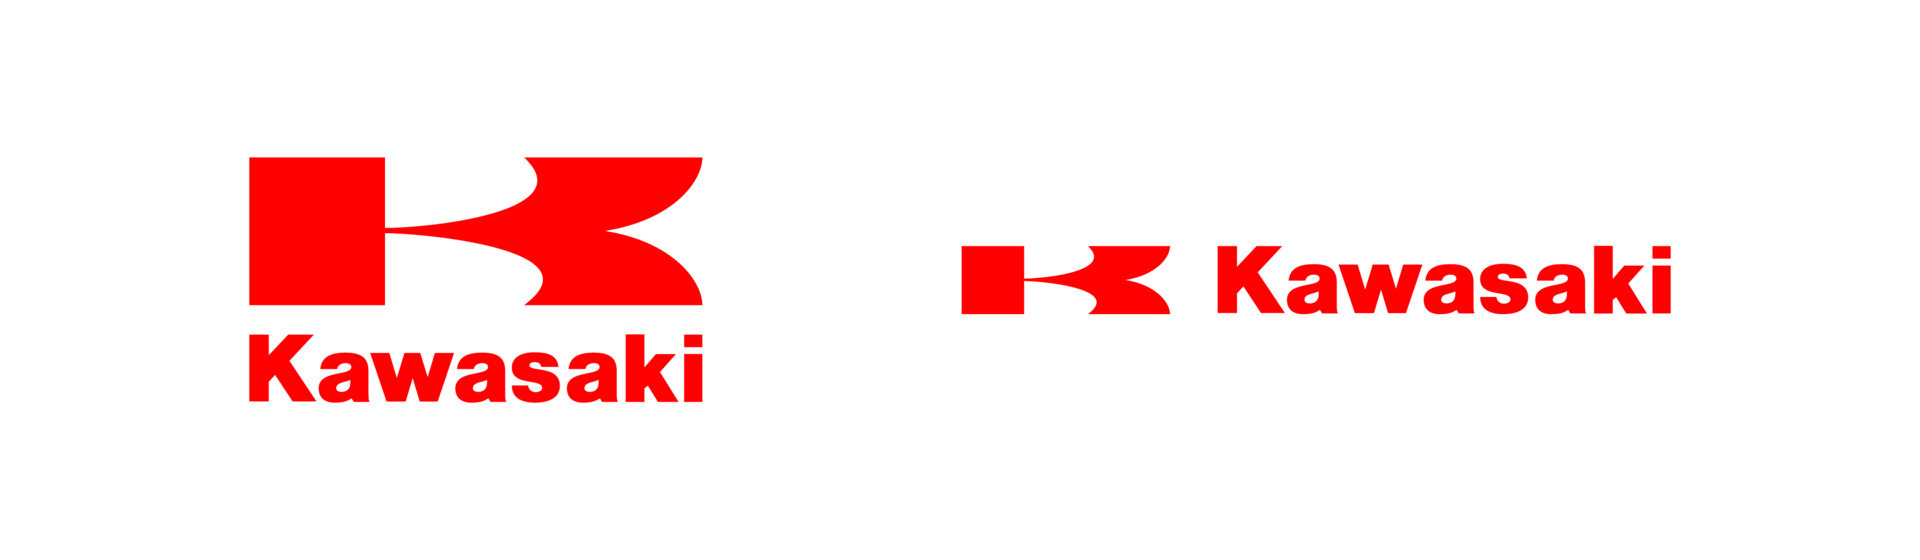 kawasaki logo vector, kawasaki icon free vector 20336452 Vector ...